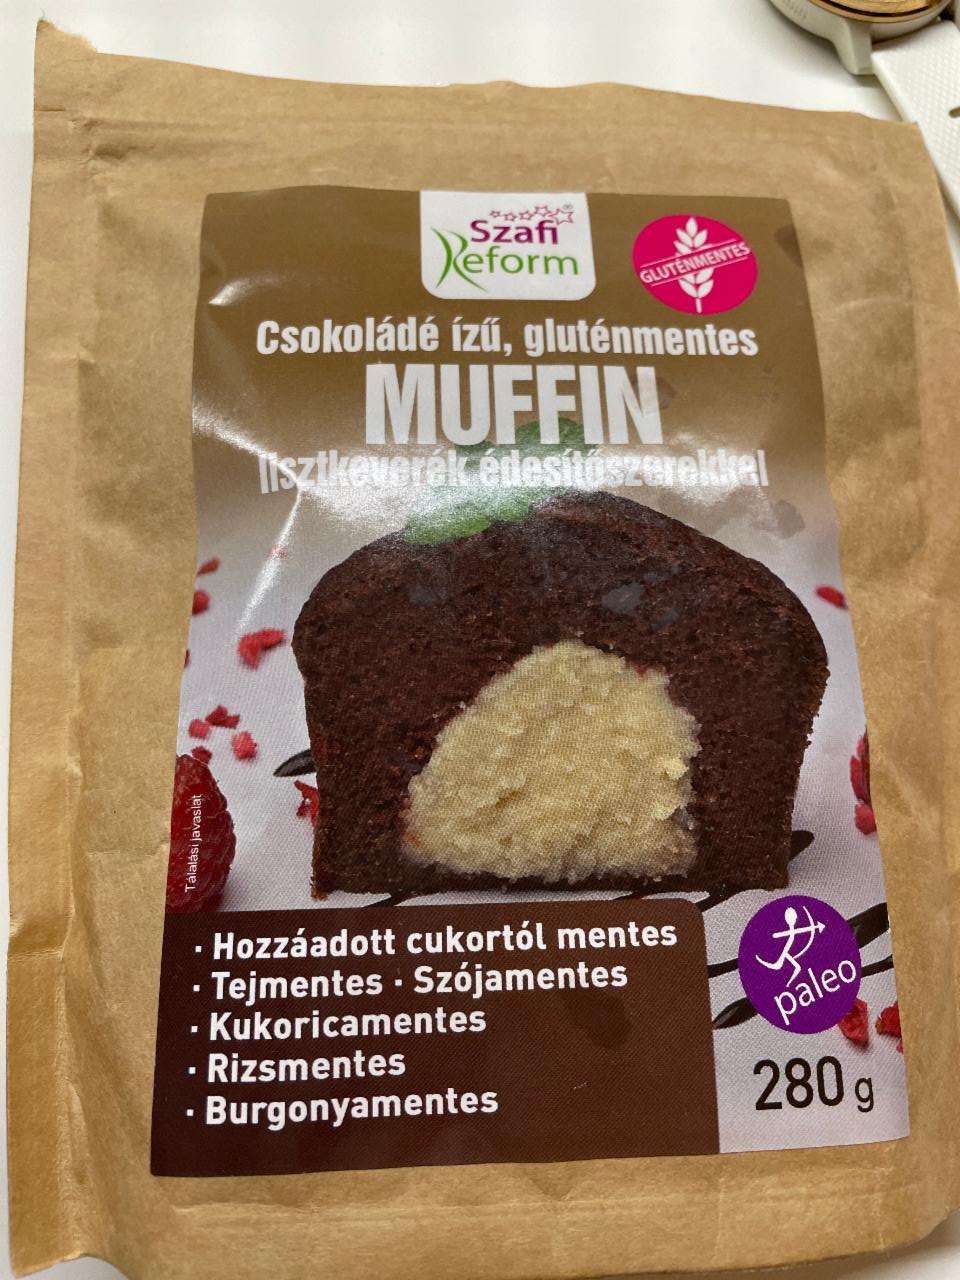 Képek - Csokoládé ízű, gluténmentes muffin lisztkeverék Szafi reform